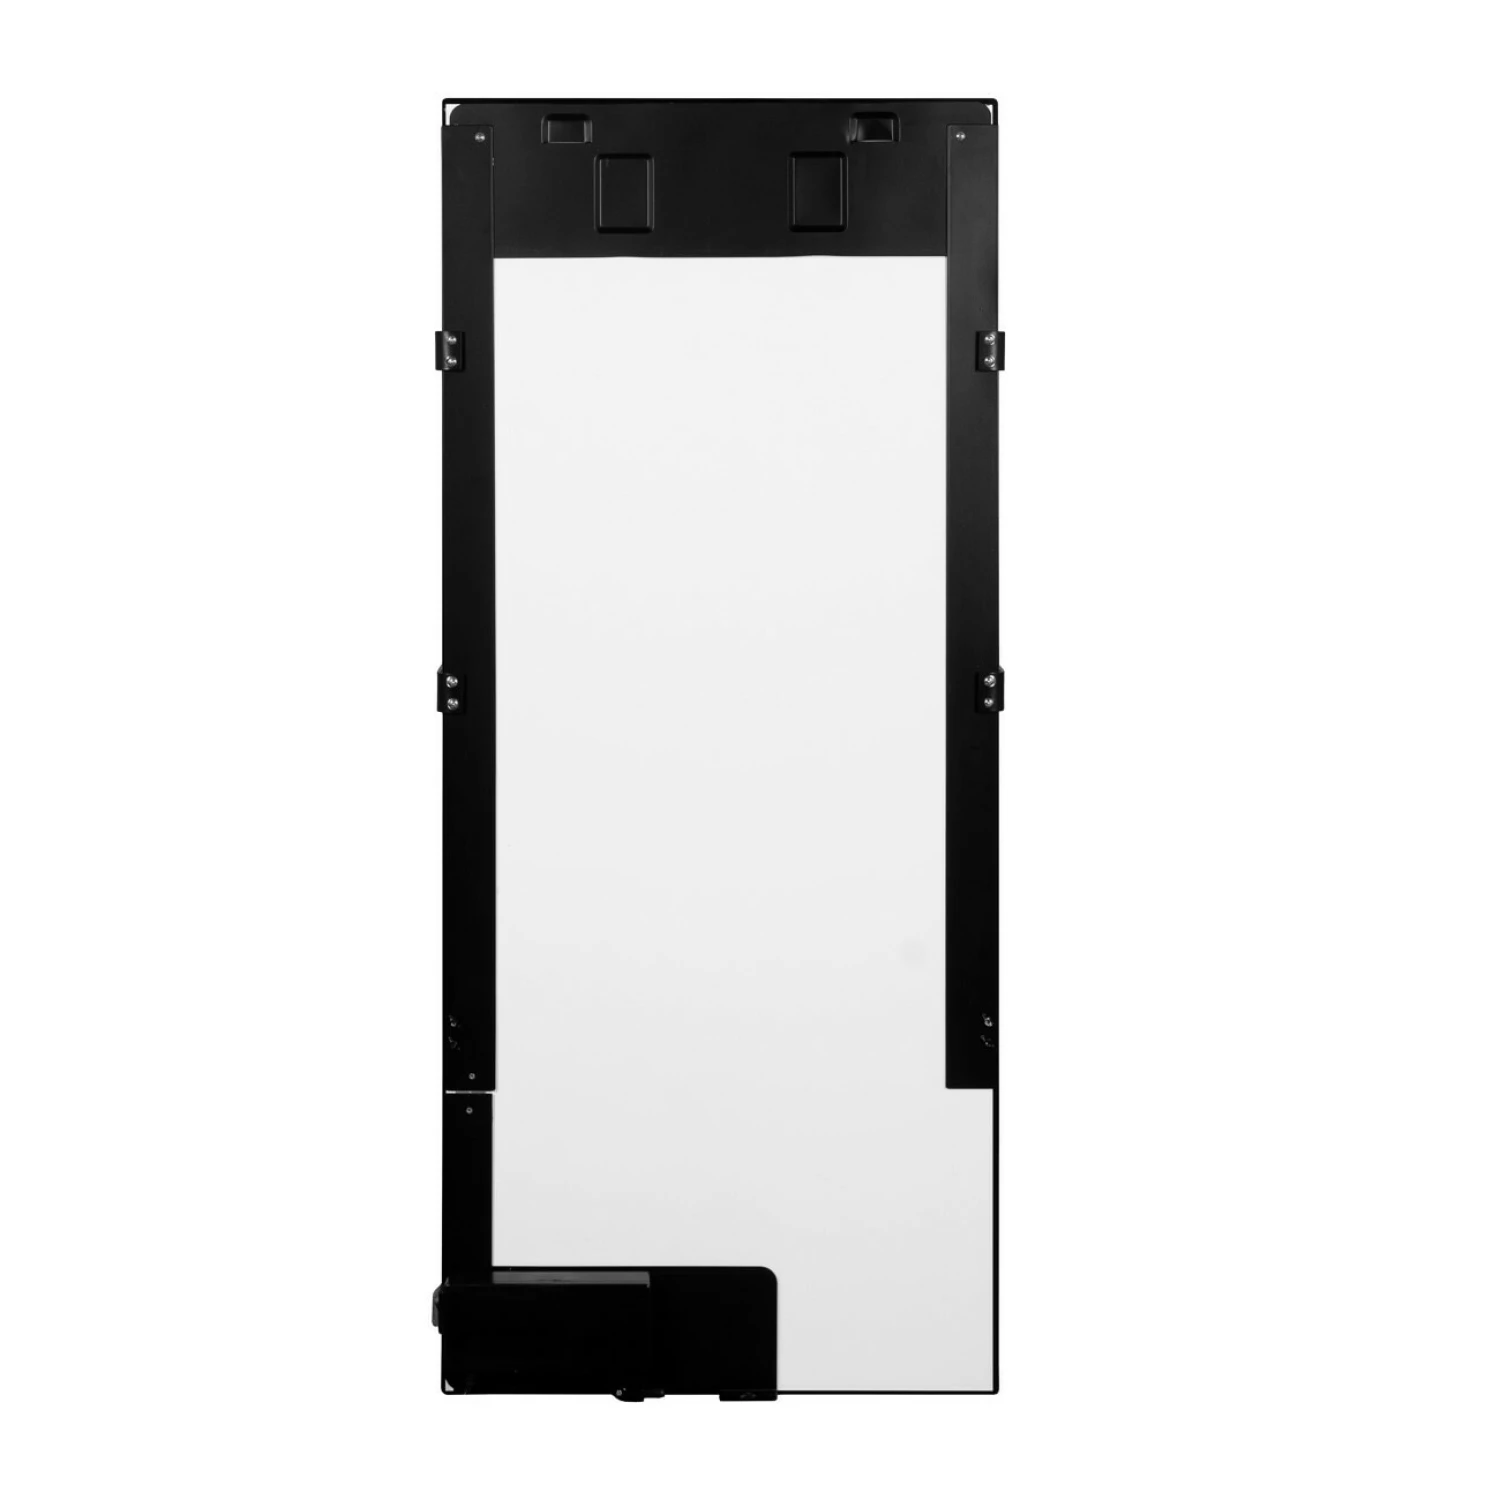 Eurom Sani 600 WiFi Infrarood paneel zwart - 600W - 11,1kg-image